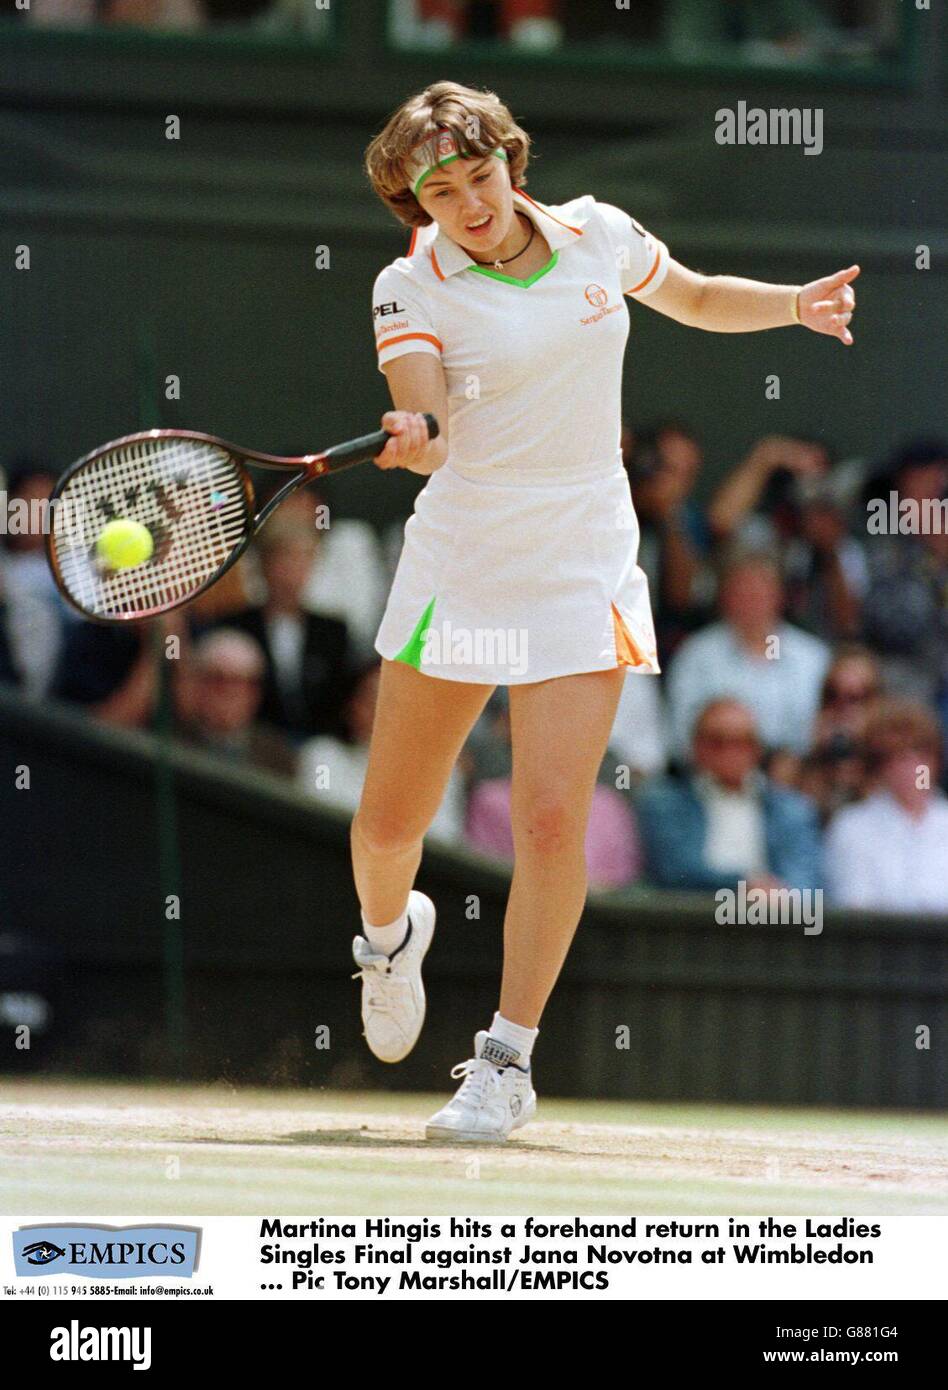 Tennis - Wimbledon - finale dames - Martina Hingis v Jana Novotna Photo  Stock - Alamy